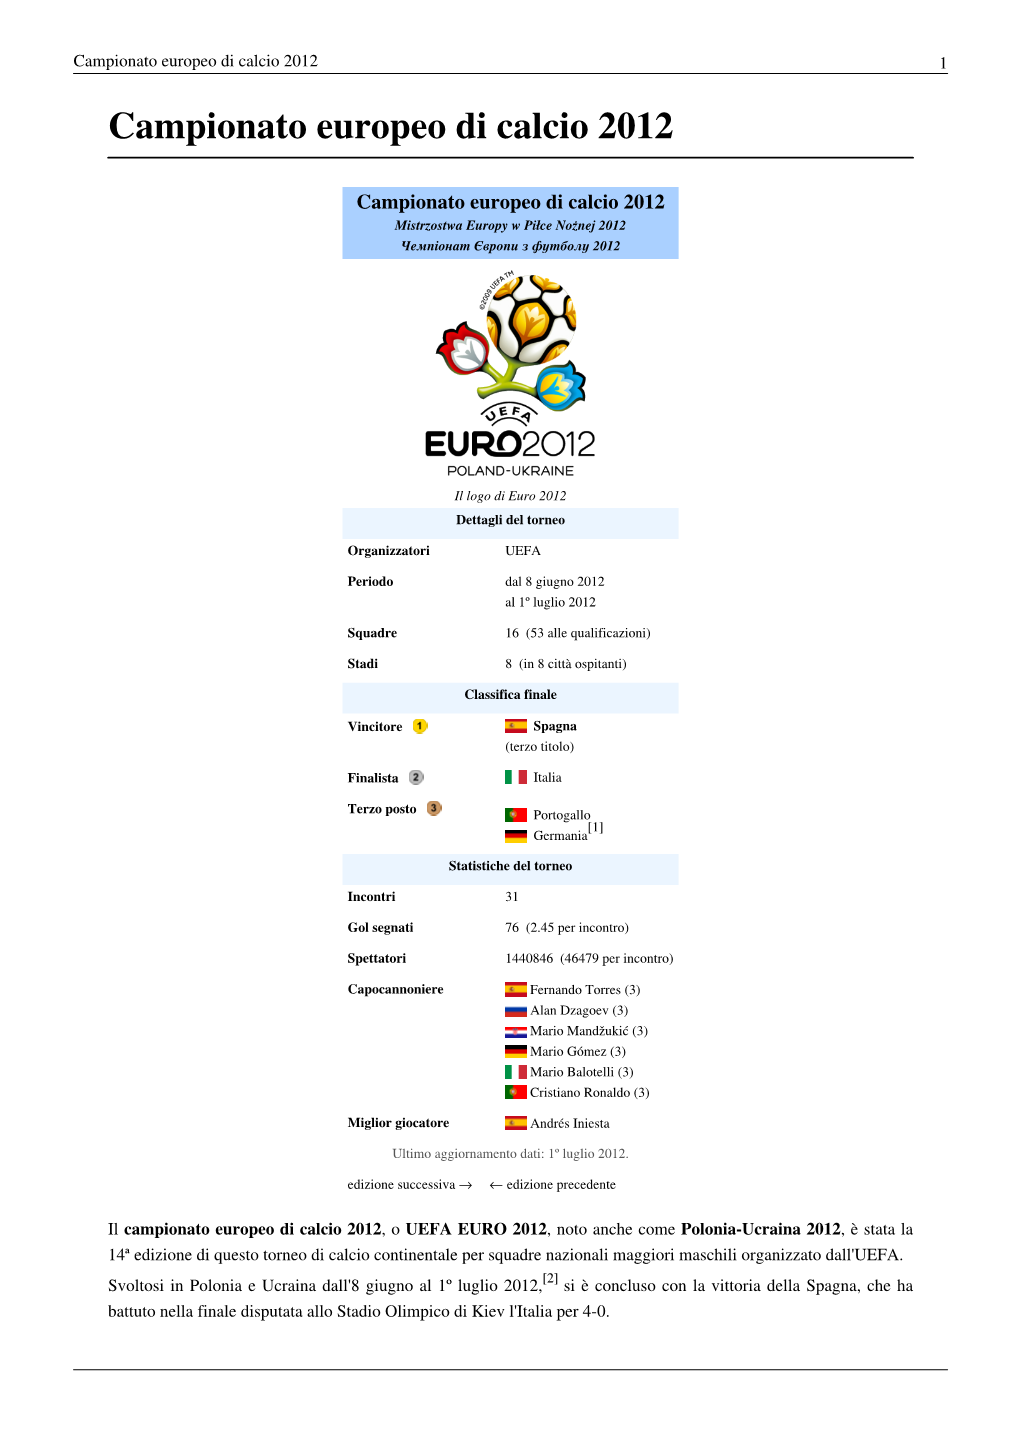 Campionato Europeo Di Calcio 2012 1 Campionato Europeo Di Calcio 2012